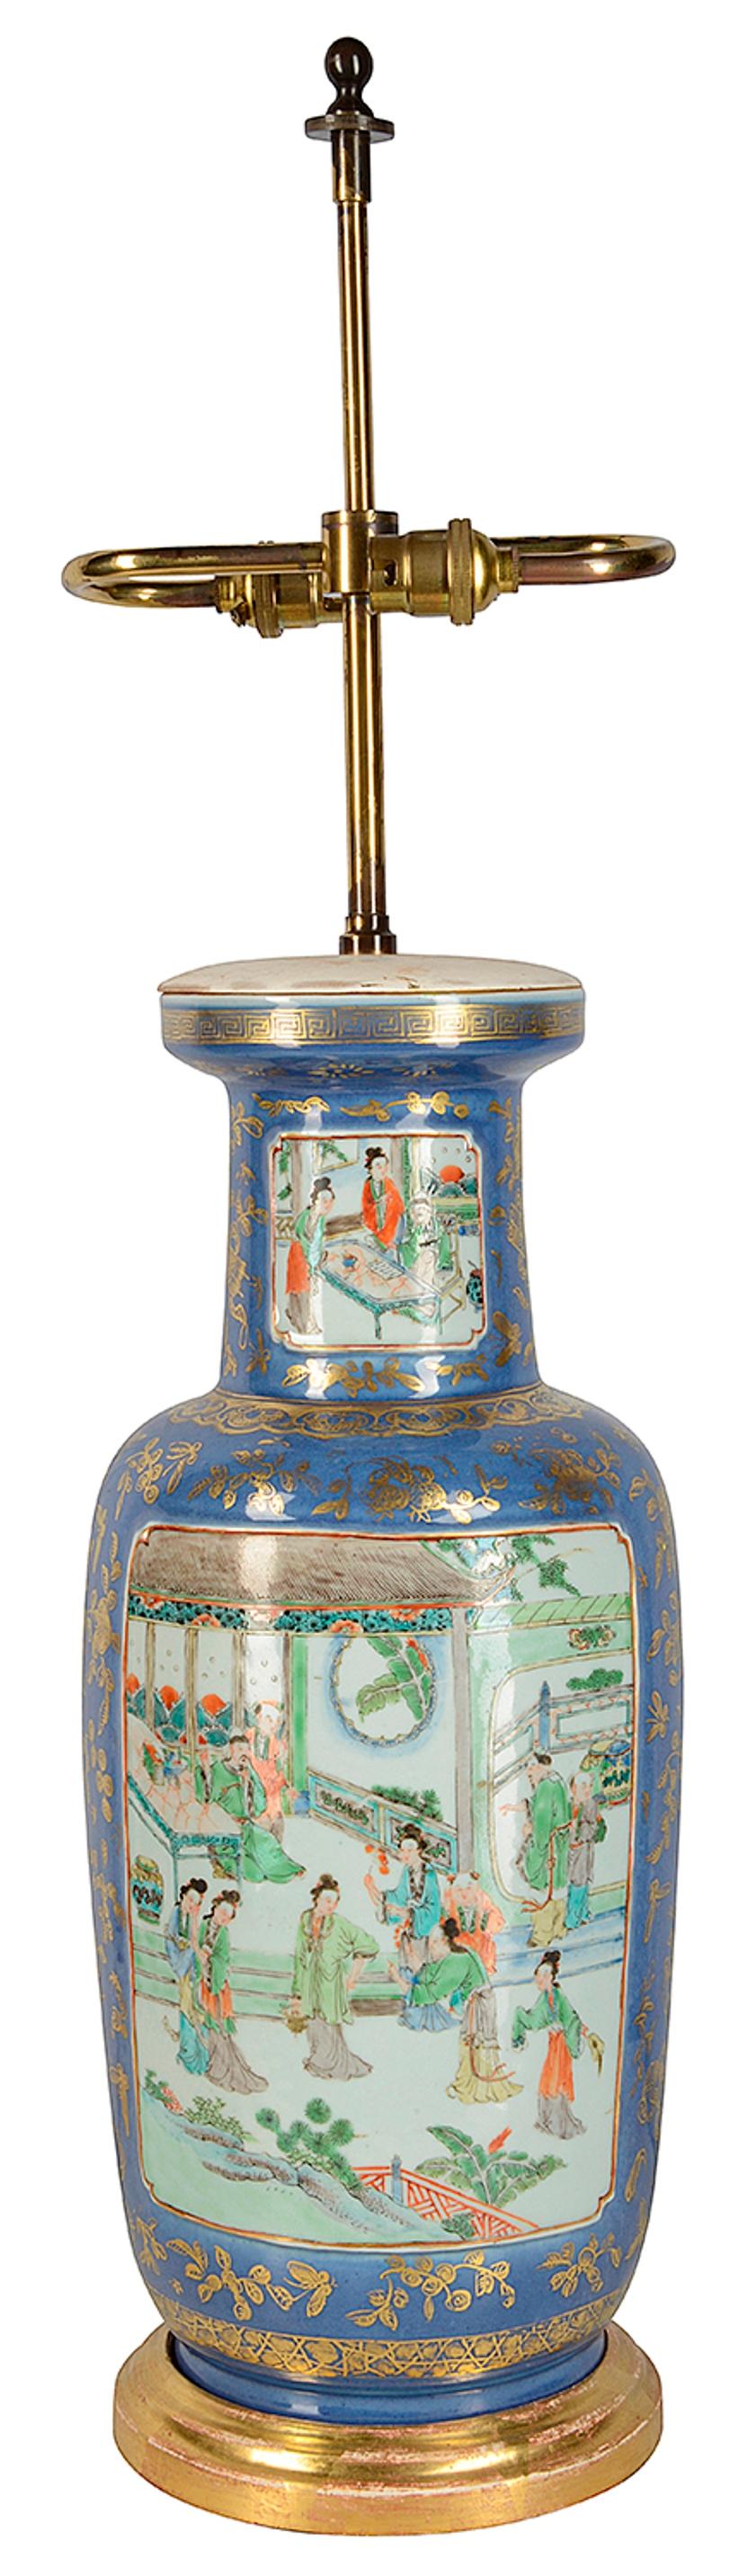 Très élégant vase/lampe chinois du 19e siècle, de couleur bleu poudre, avec un fond bleu clair et une décoration de feuilles dorées, des panneaux peints insérés, l'un représentant divers courtisans masculins avec des spectatrices, l'autre diverses